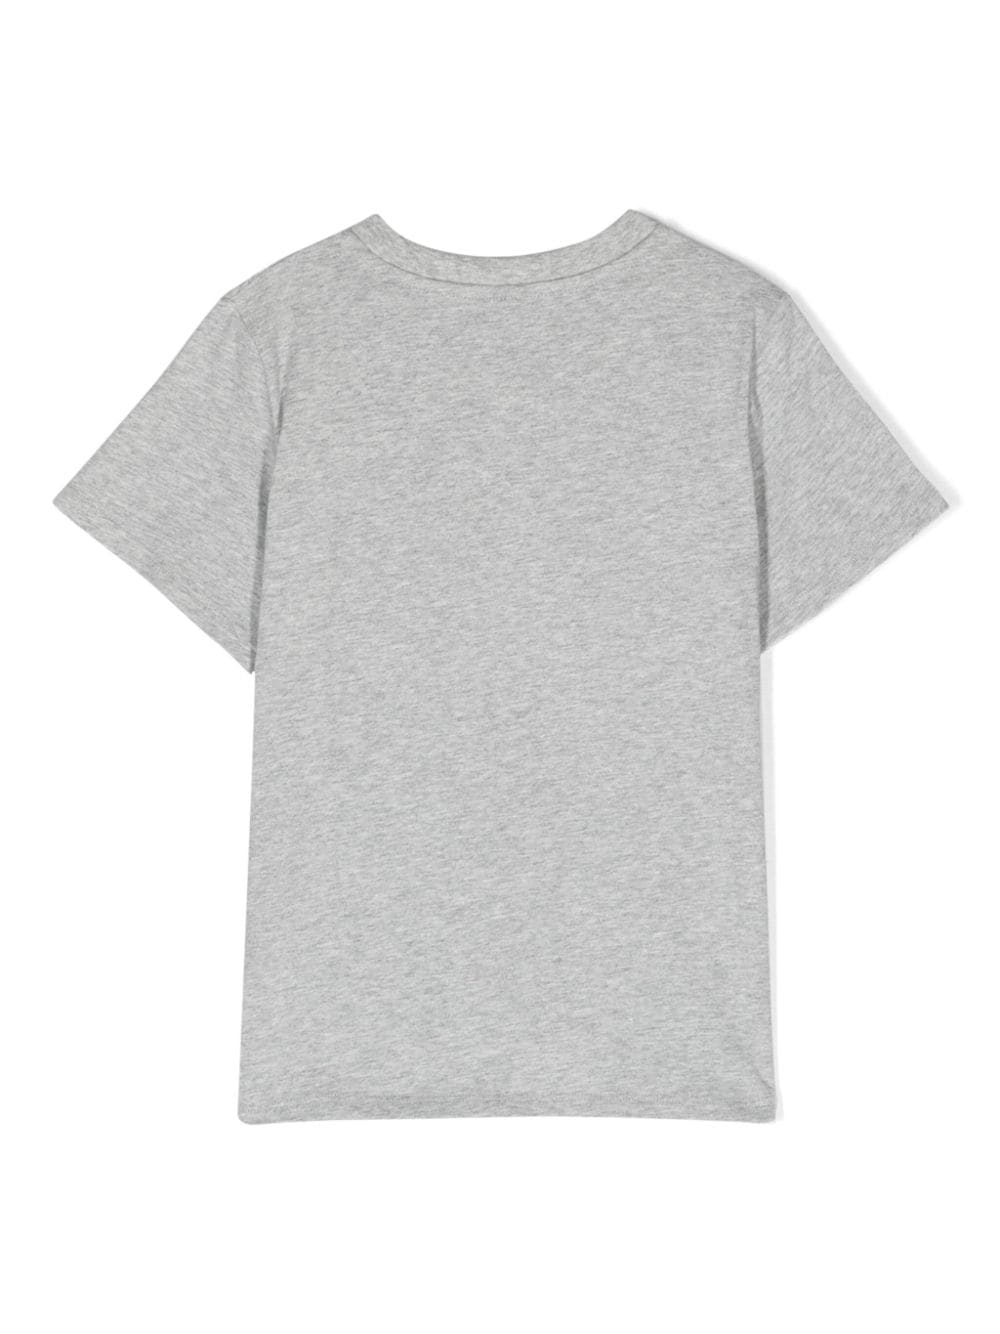 t-shirt enfant gris